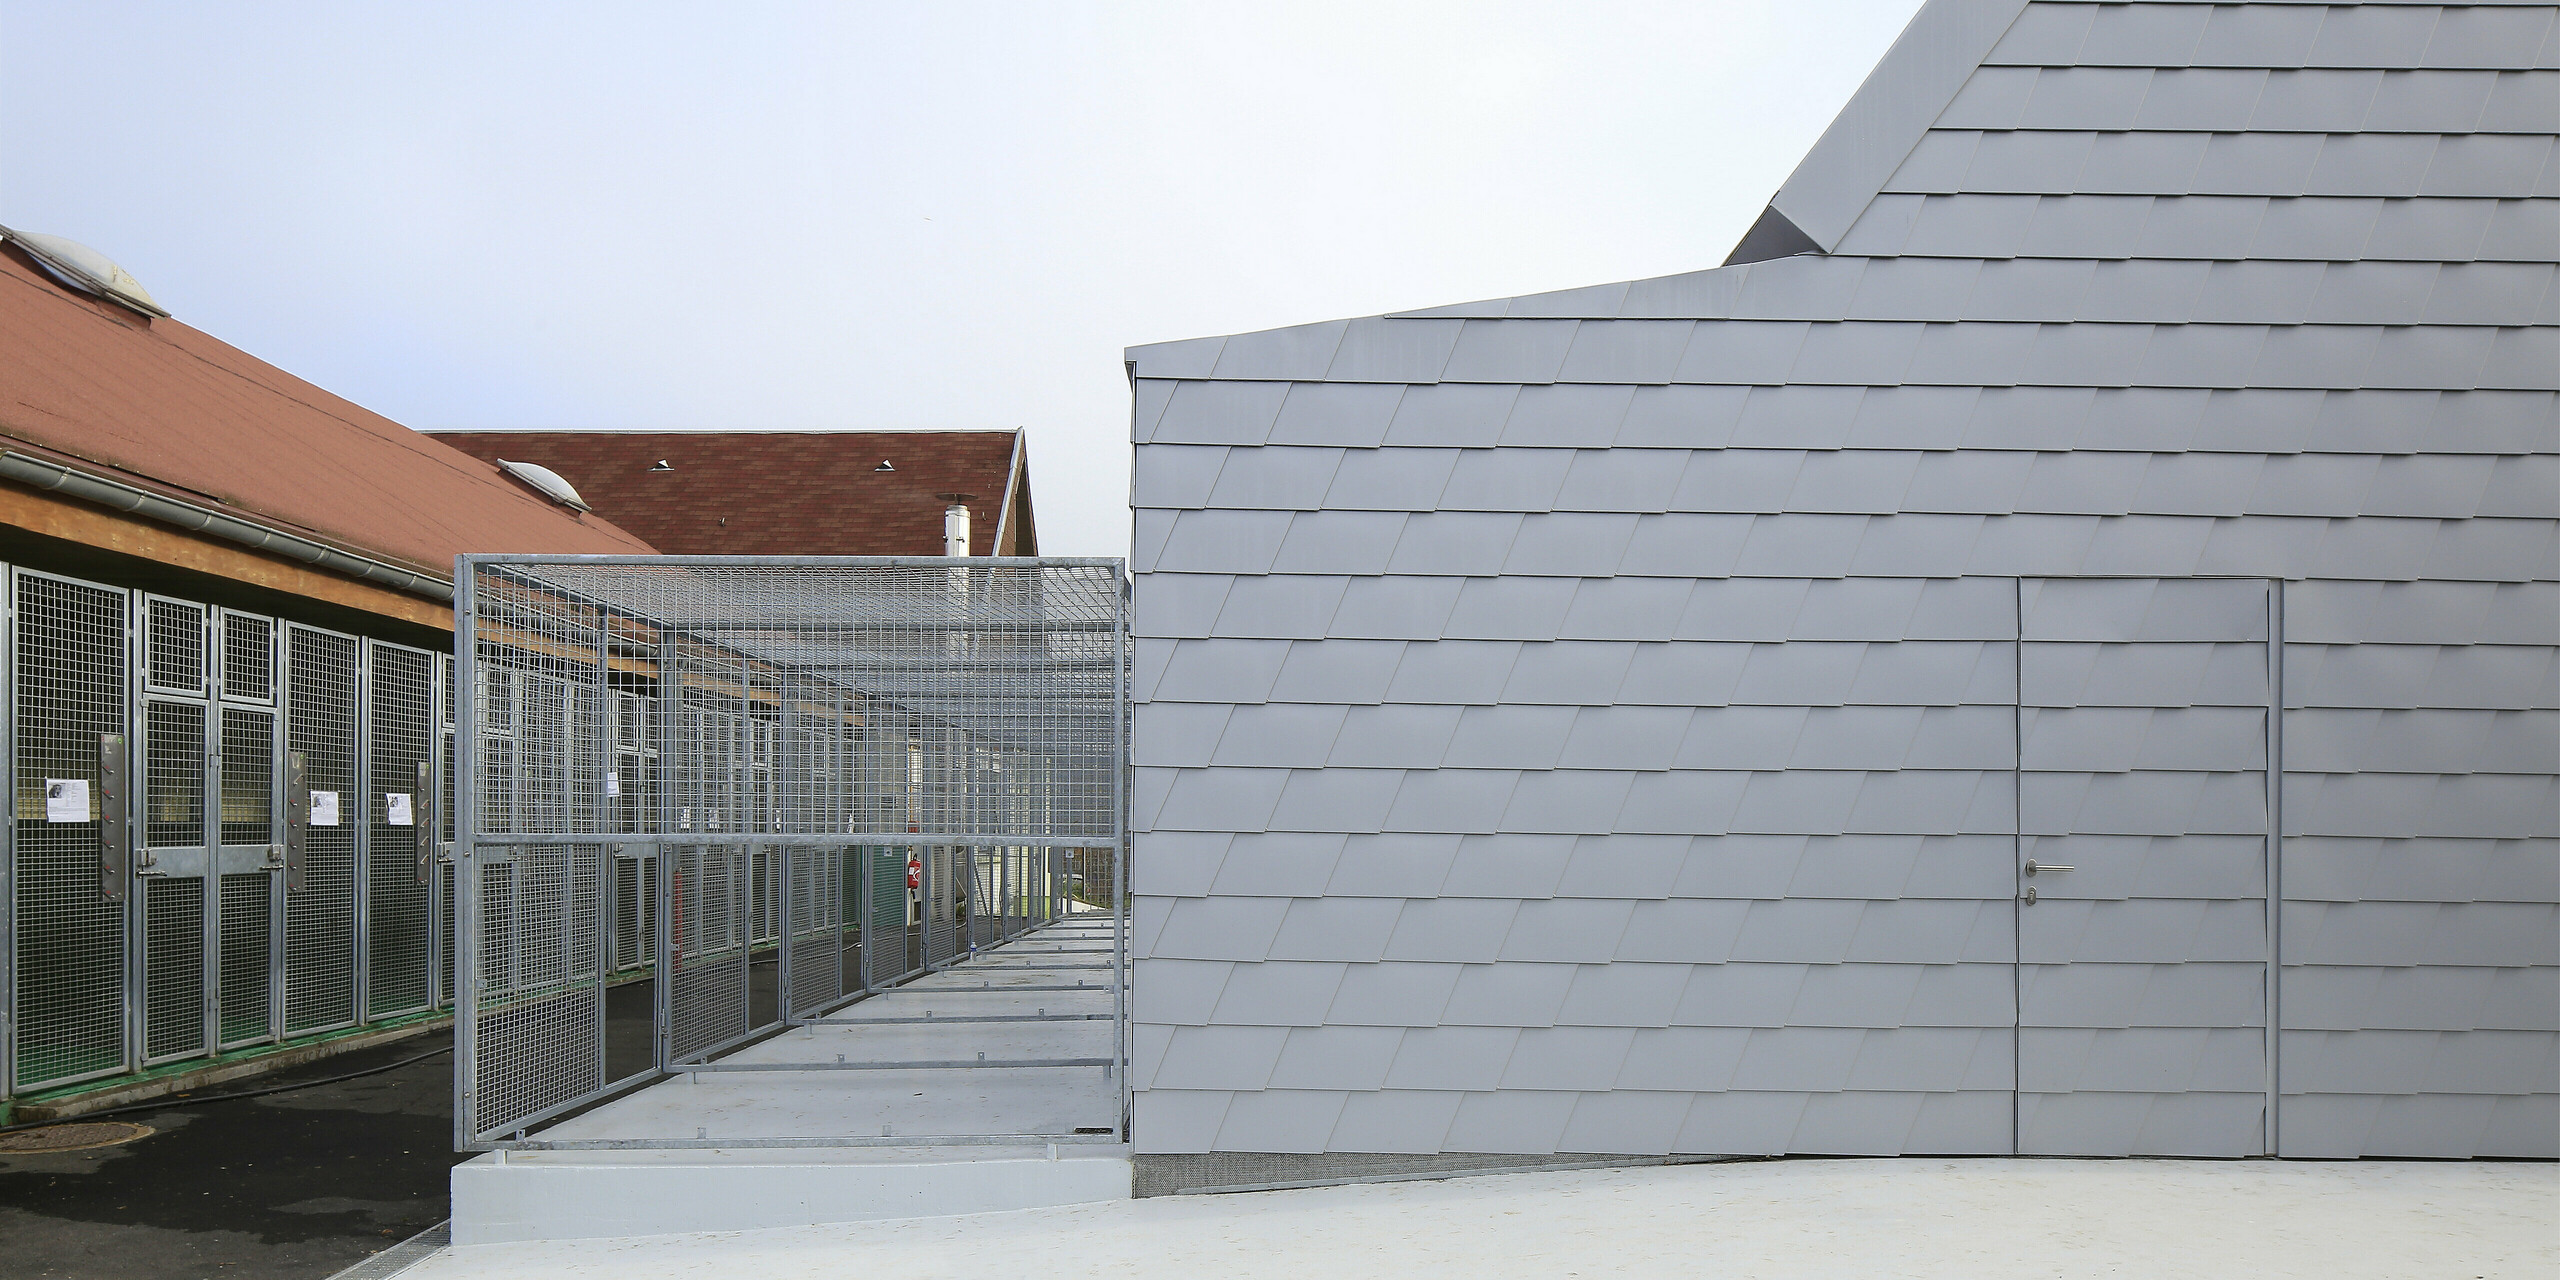 Arrière du refuge pour animaux argenté à Mullhouse avec une coque de bâtiment en aluminium